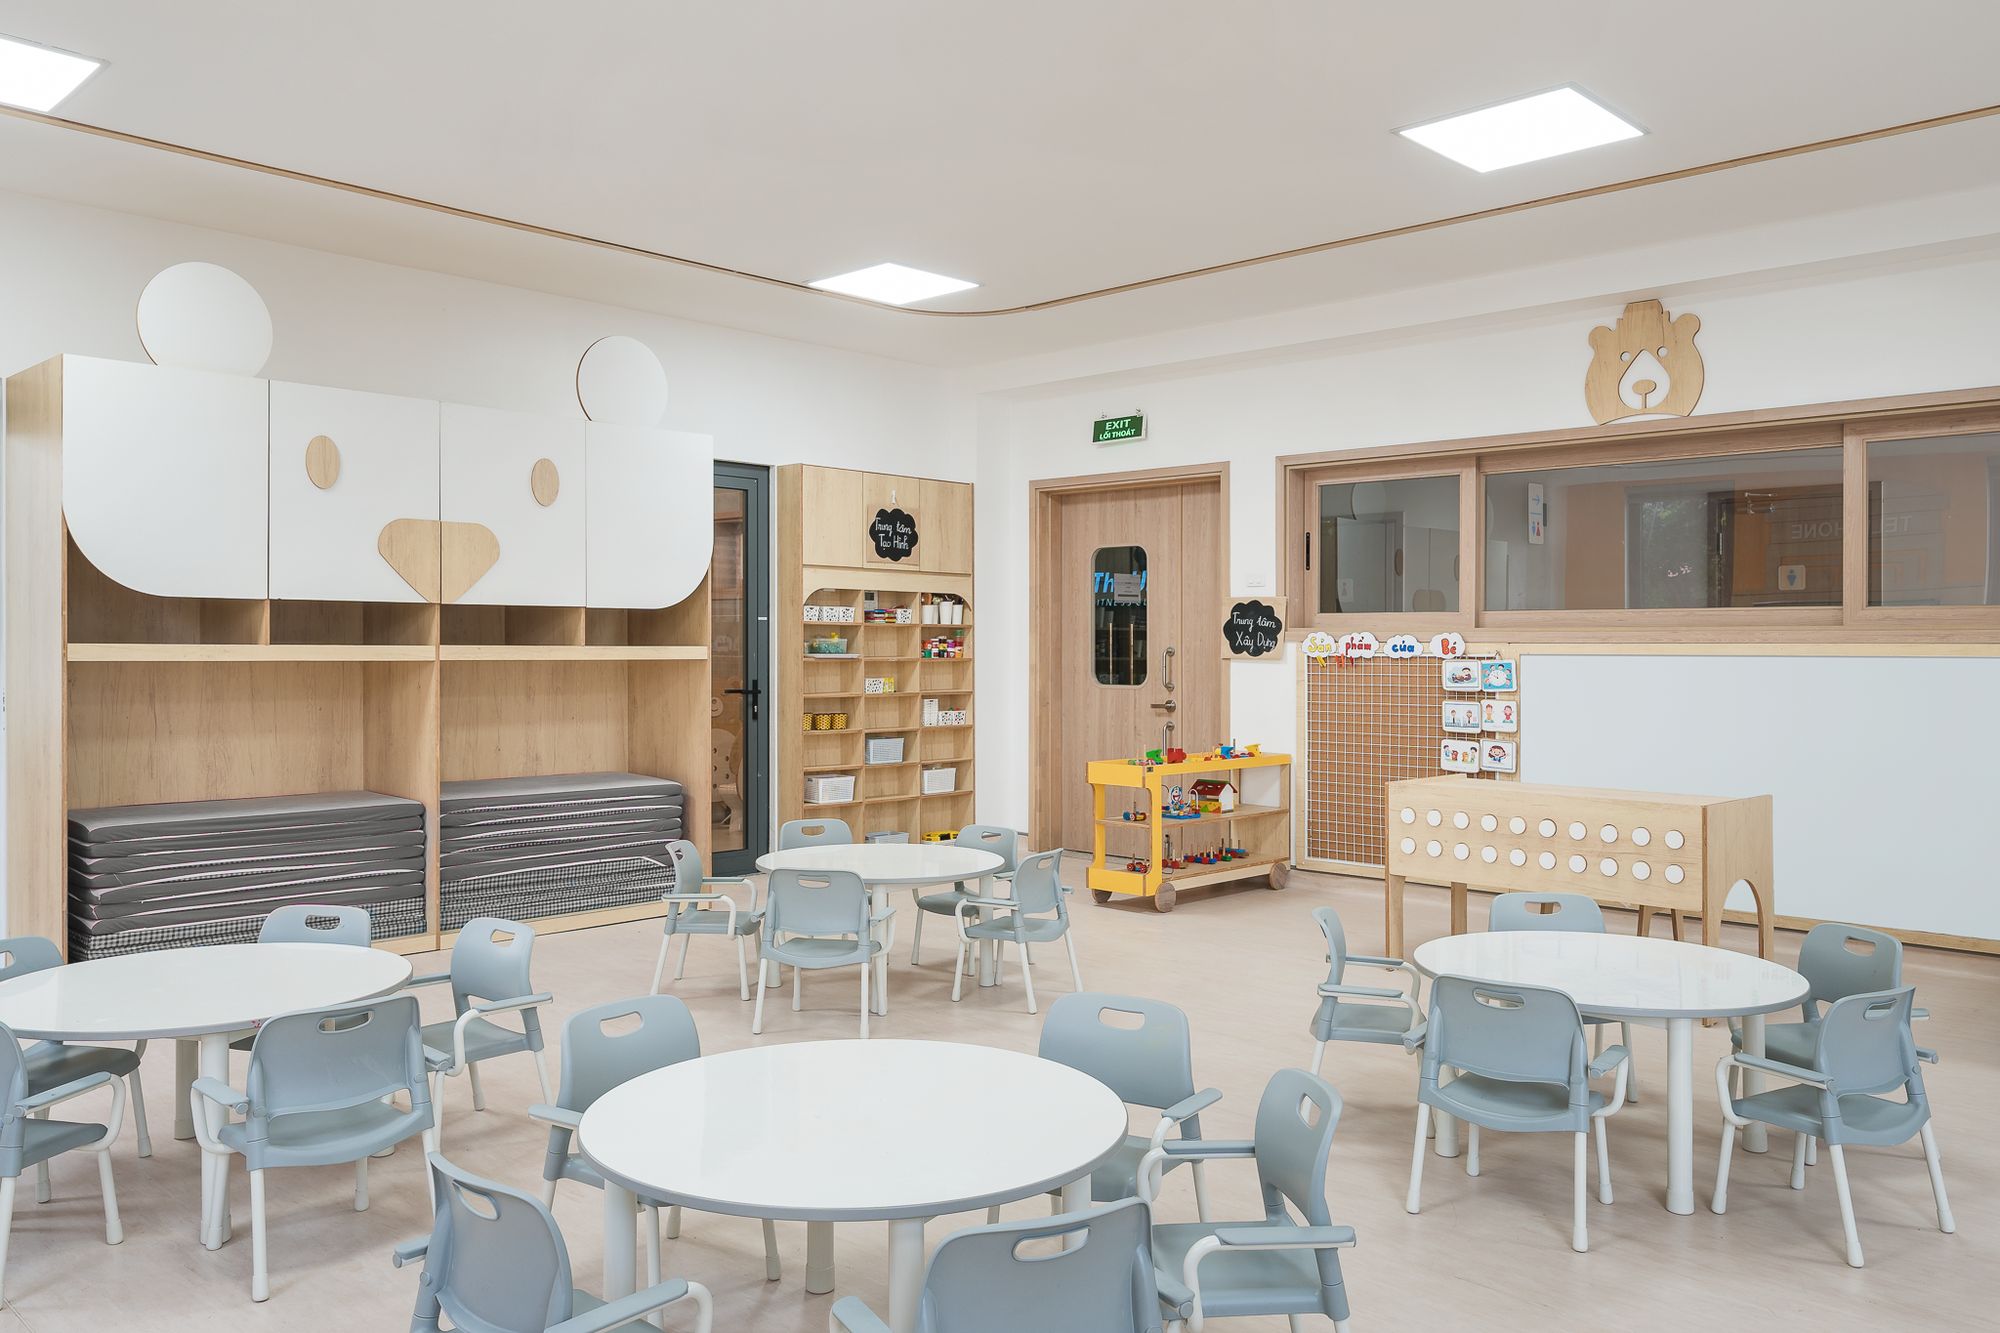 图片[8]|枫熊幼儿园|ART-Arrakis | 建筑室内设计的创新与灵感